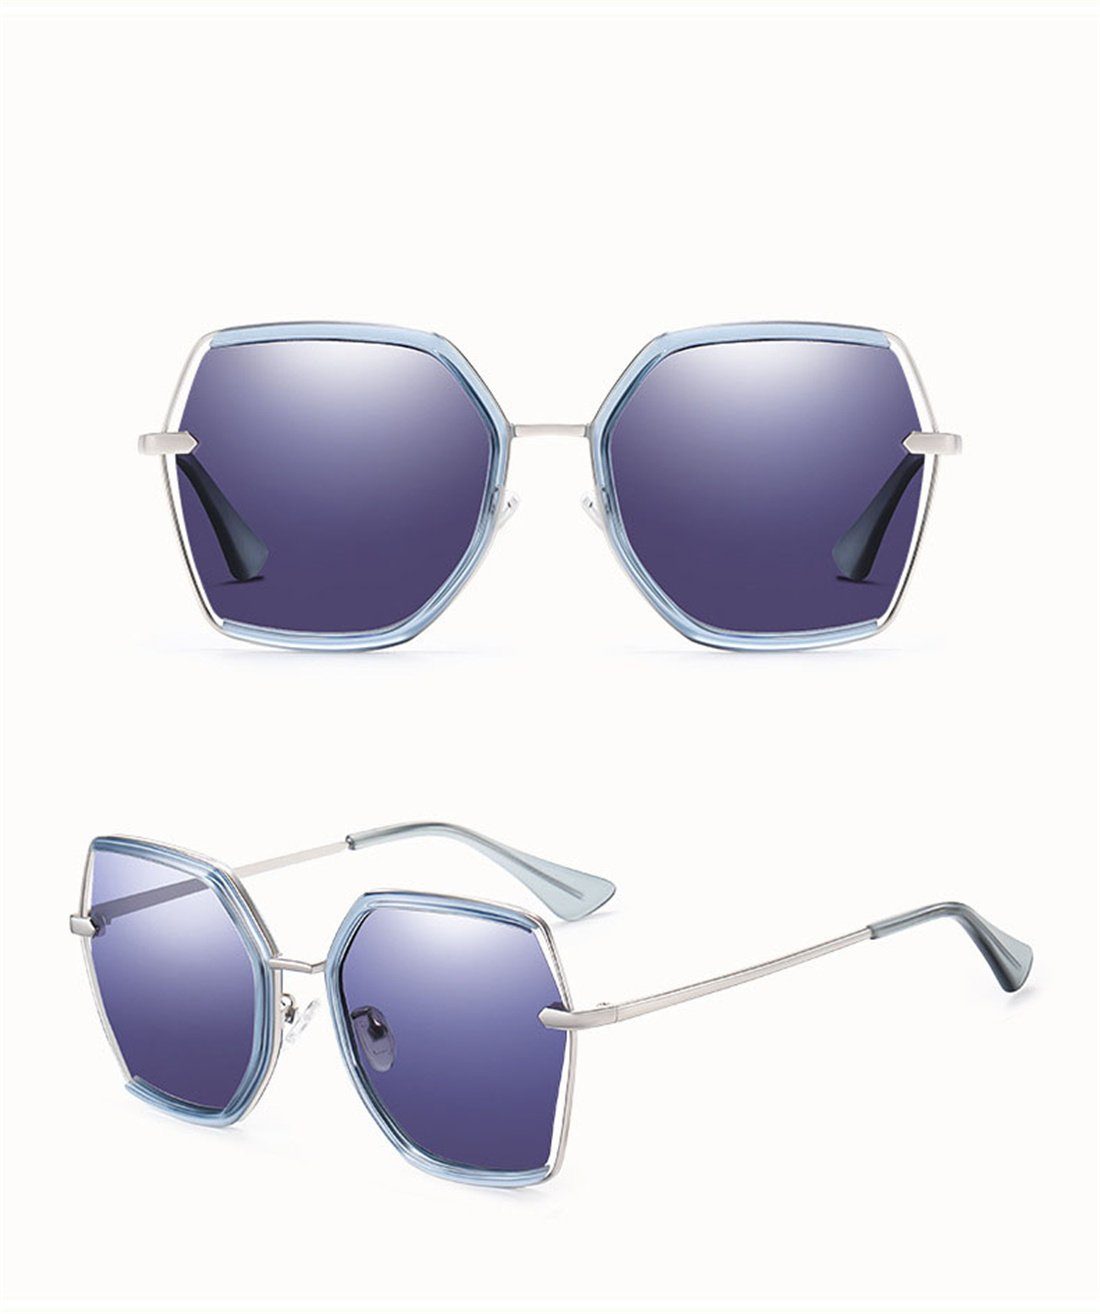 DÖRÖY Sonnenbrille Damen Mode Sonnenbrille, blau Box polarisierte Sonnenschirme Sonnenbrille